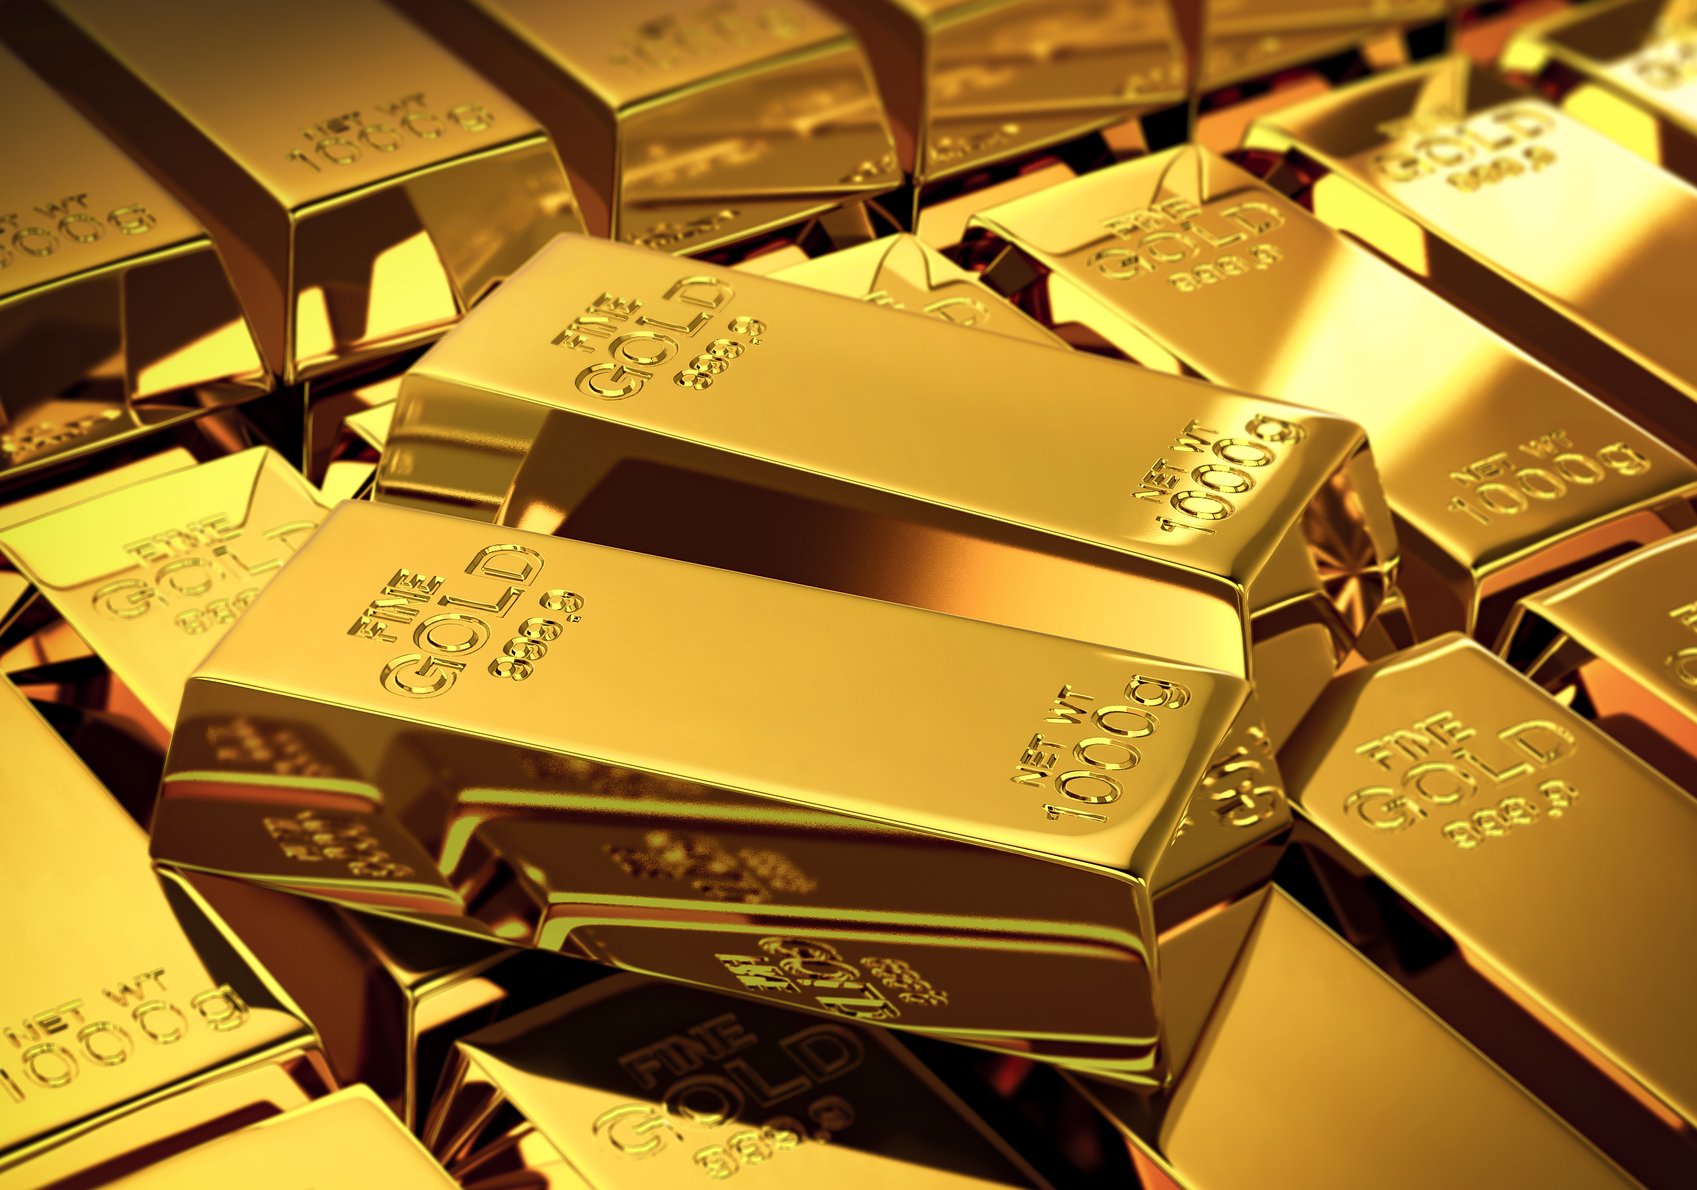 أسعار الذهب اليوم الخميس 21/3/2019 وارتفاع مفاجيء بسعر جميع الأعيرة